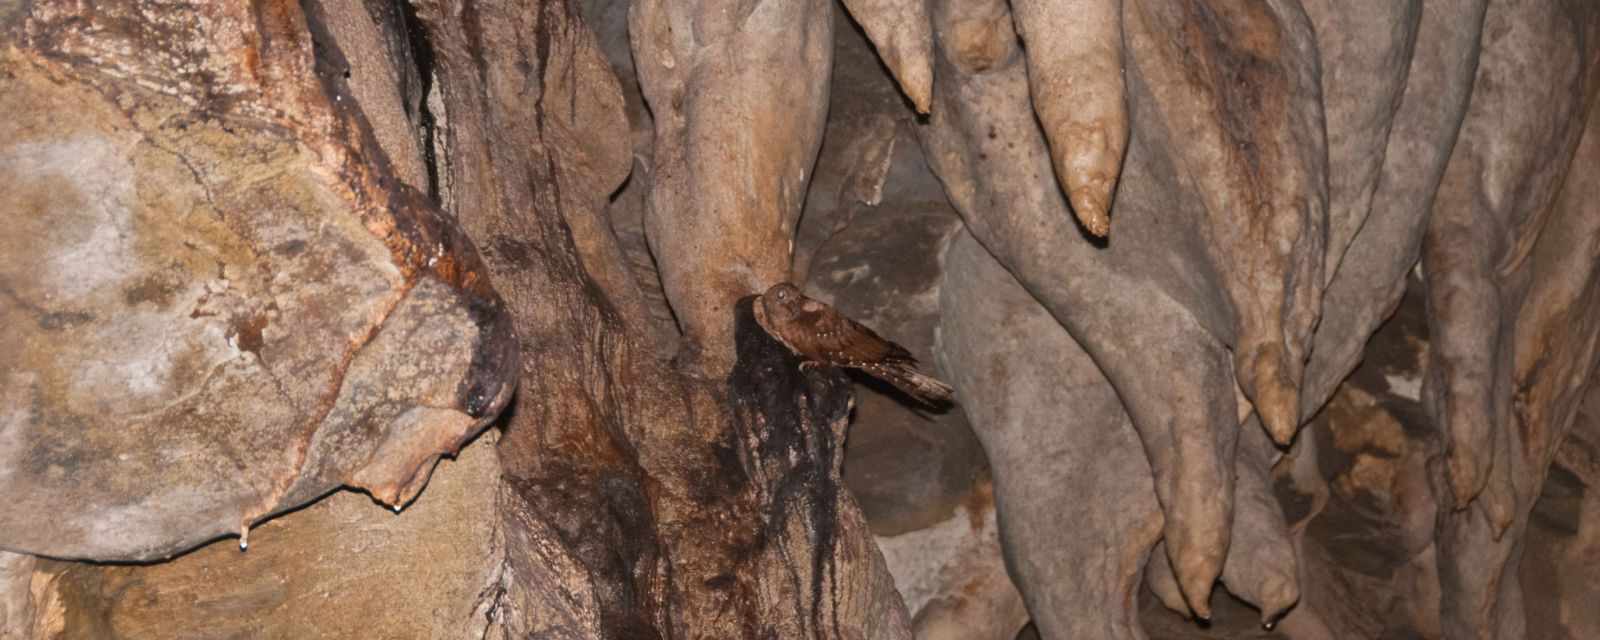 Cumaca Cave - Oilbirds - Trinidad